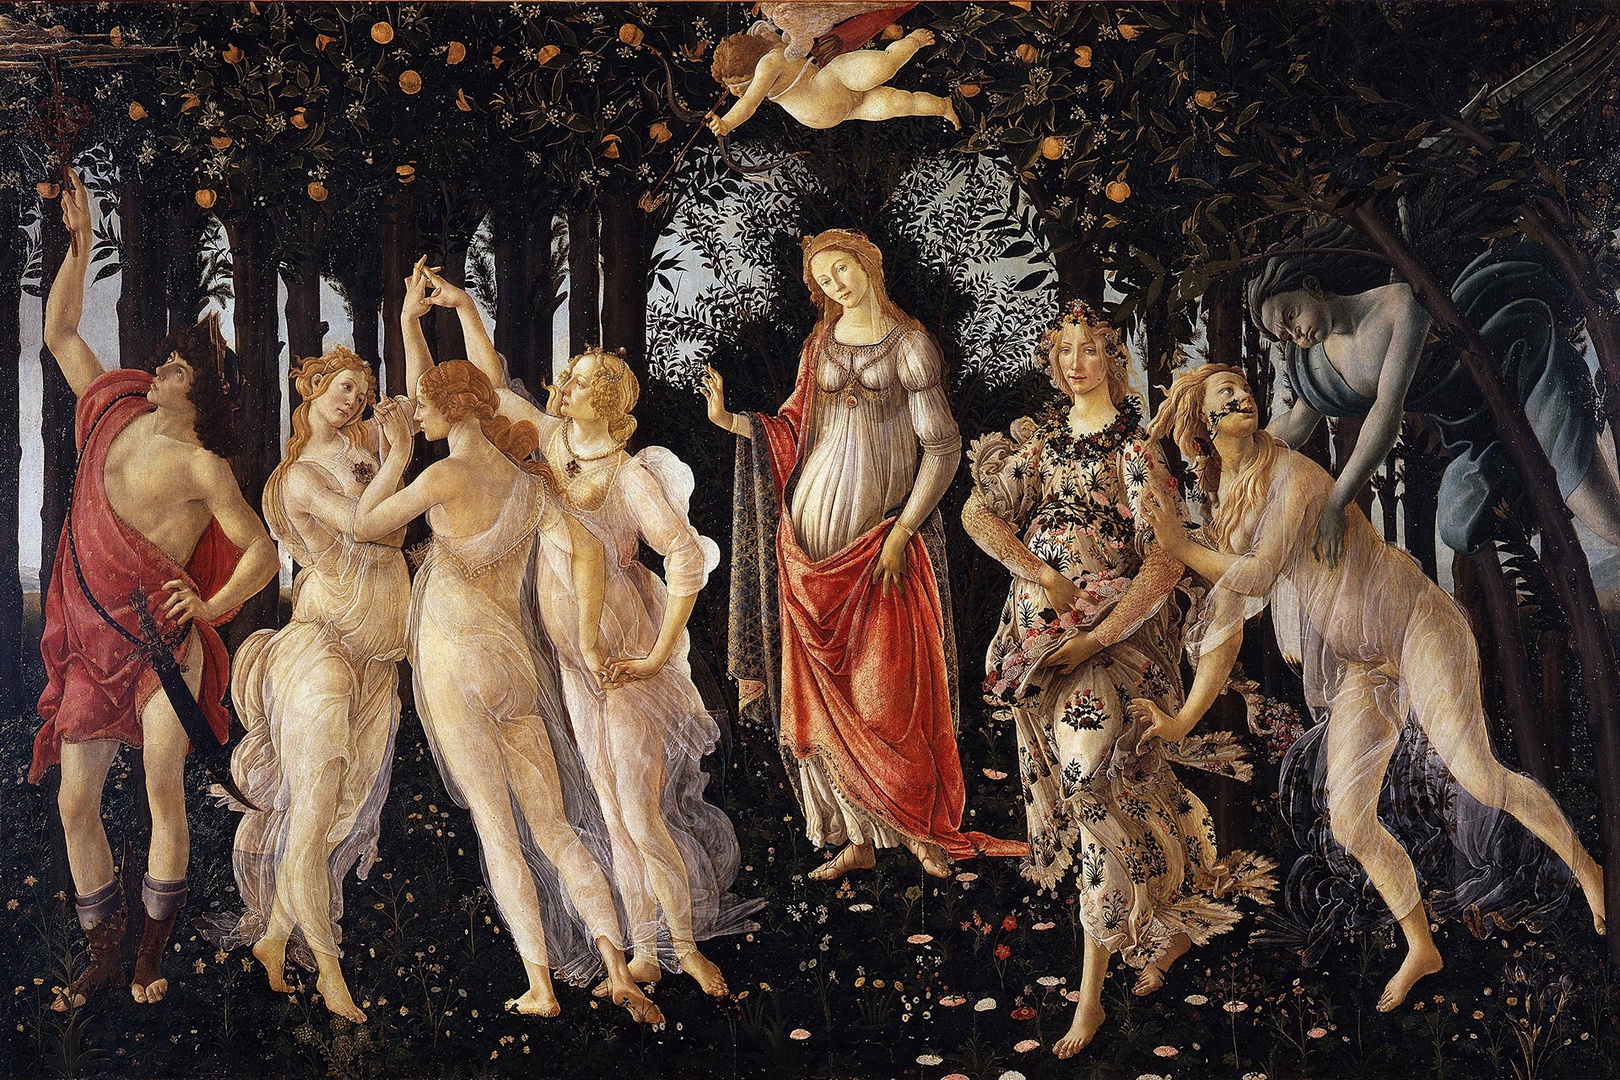 Primavera, Spring, by Sandro Botticelli